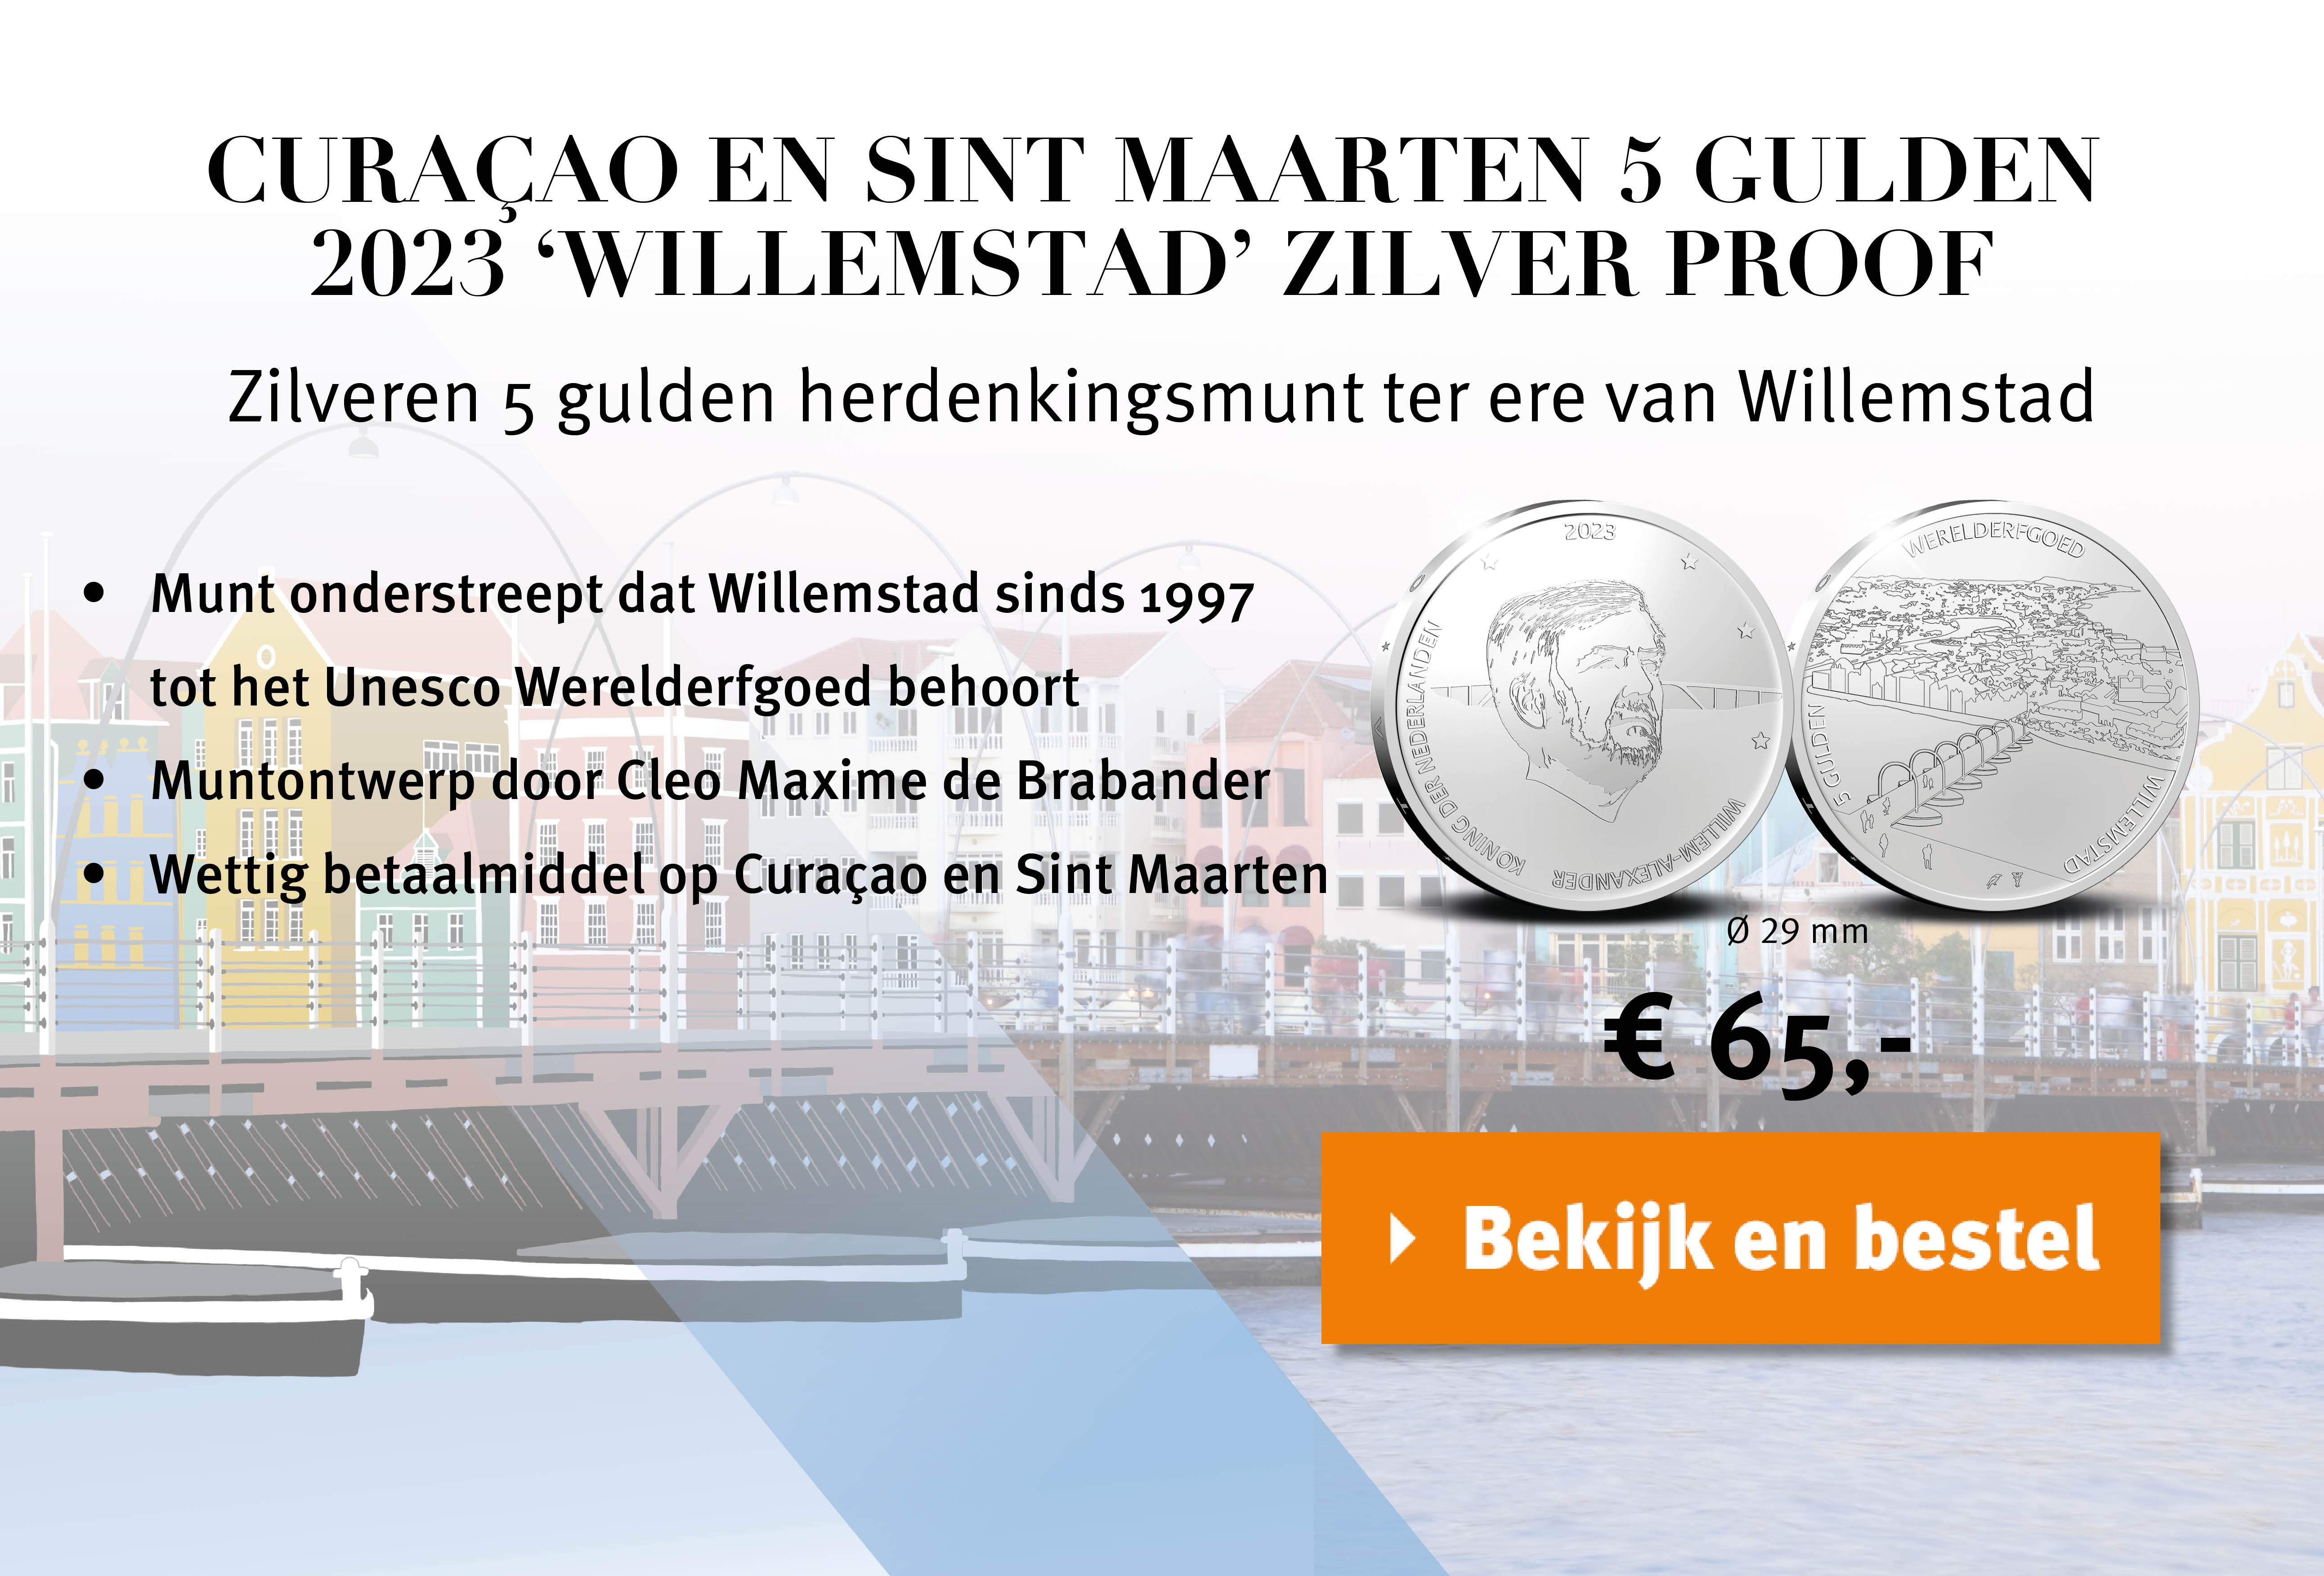 Bekijk en bestel: Curaçao en Sint Maarten 5 Gulden 2023 'Willemstad' Zilver Proof